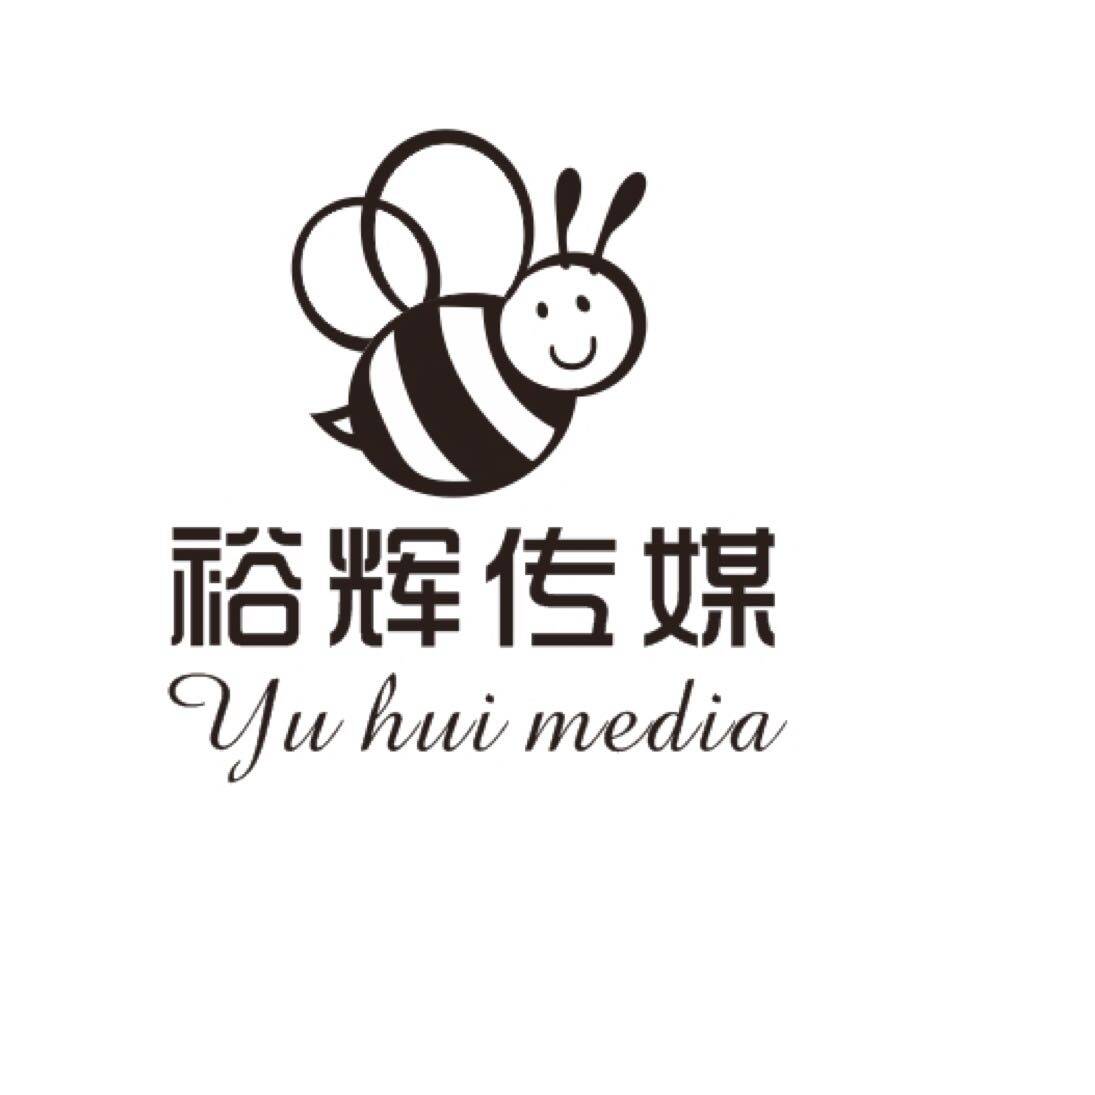 东莞市裕辉文化传媒有限公司logo